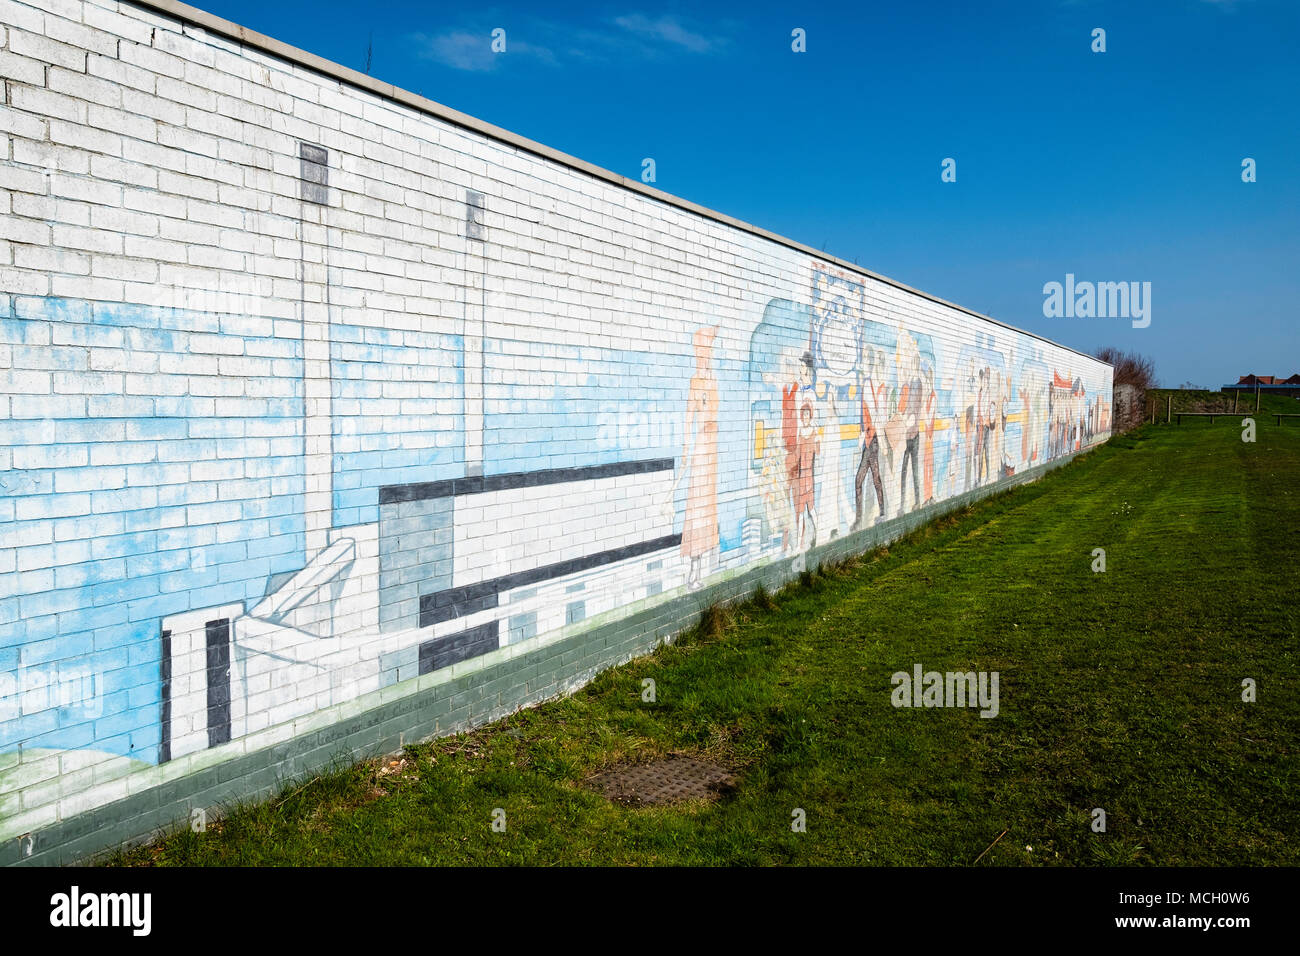 Vista del mural que muestra la historia industrial en el sitio de la ex Cockenzie Power Station en East Lothian, Escocia. Foto de stock